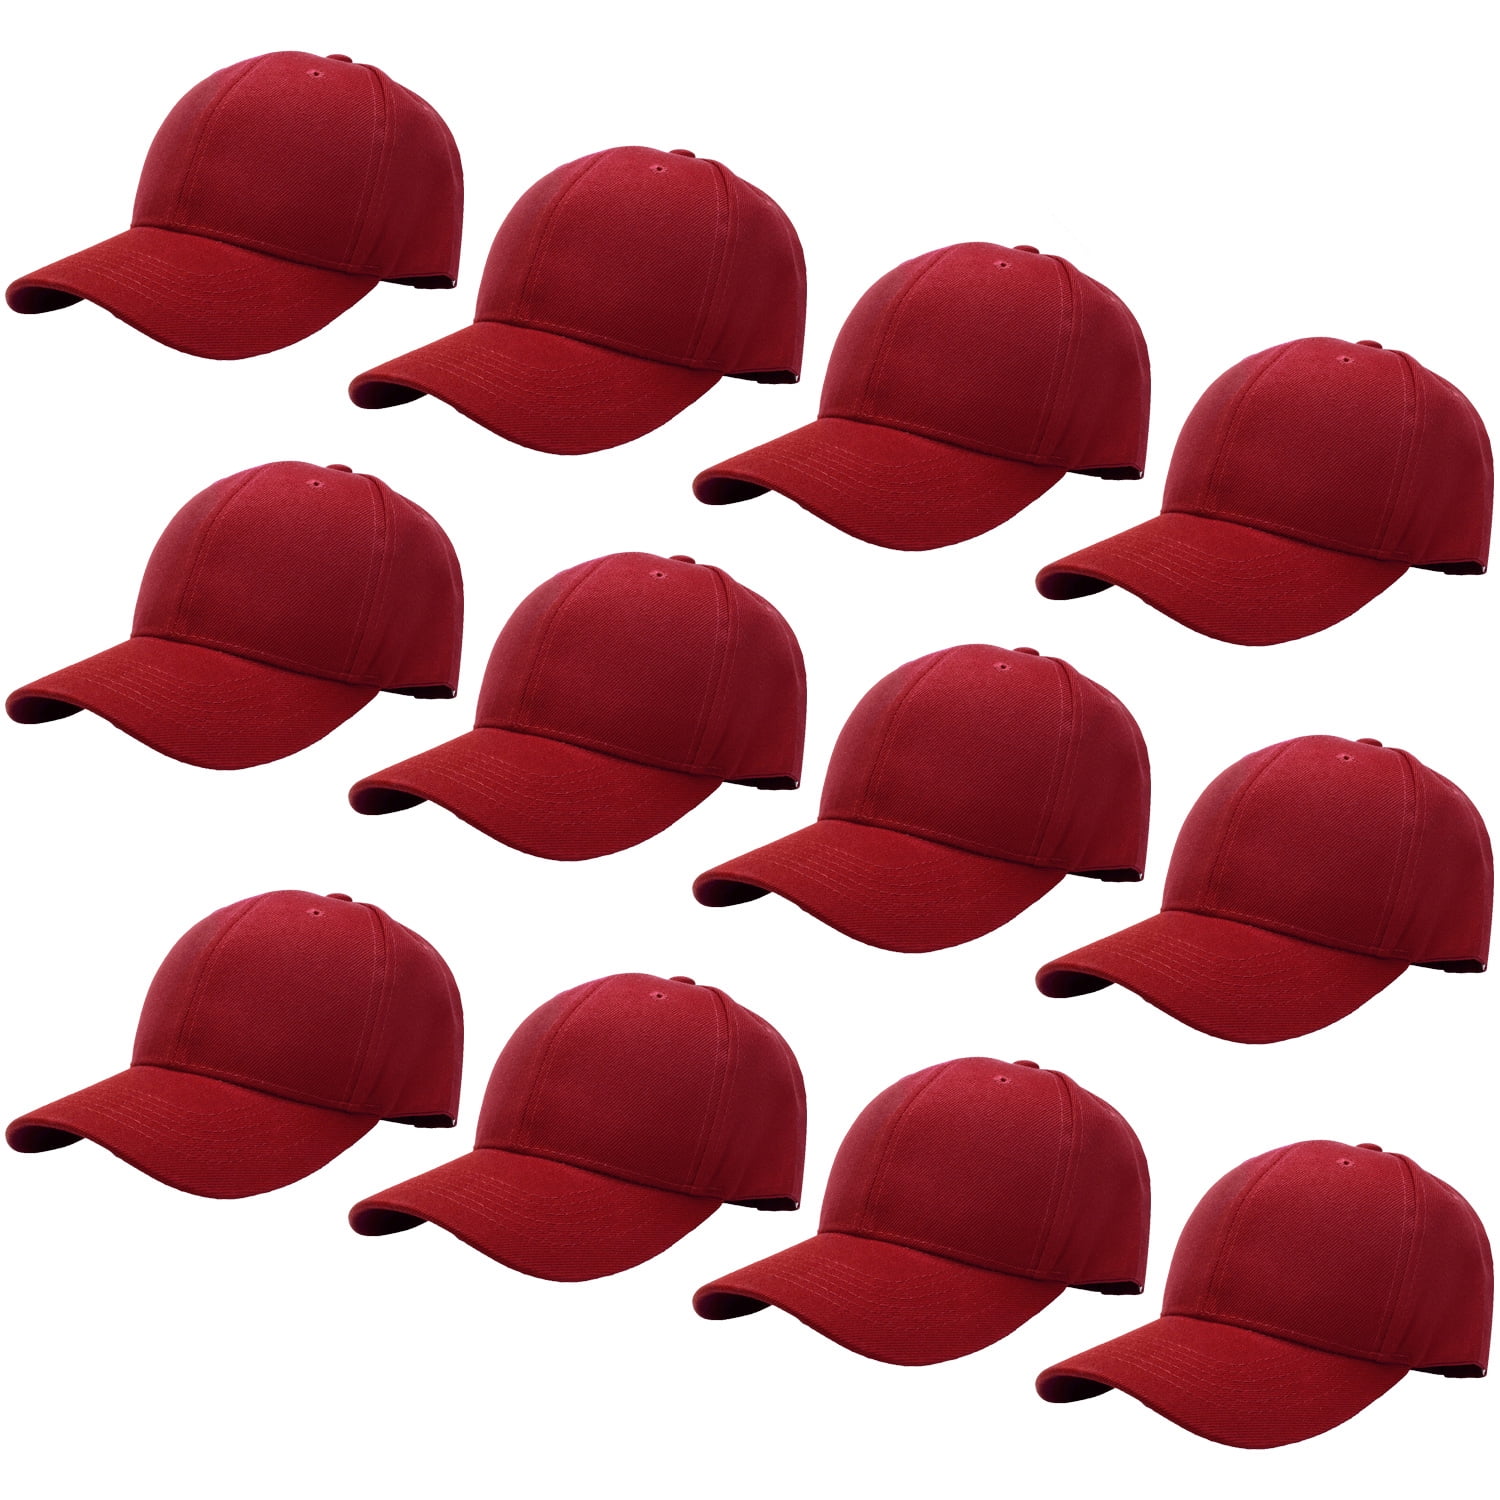 TZ Promise 12 Pack Wholesale Unisex Plain Solid Color Adjustable Baseball Caps Hats 